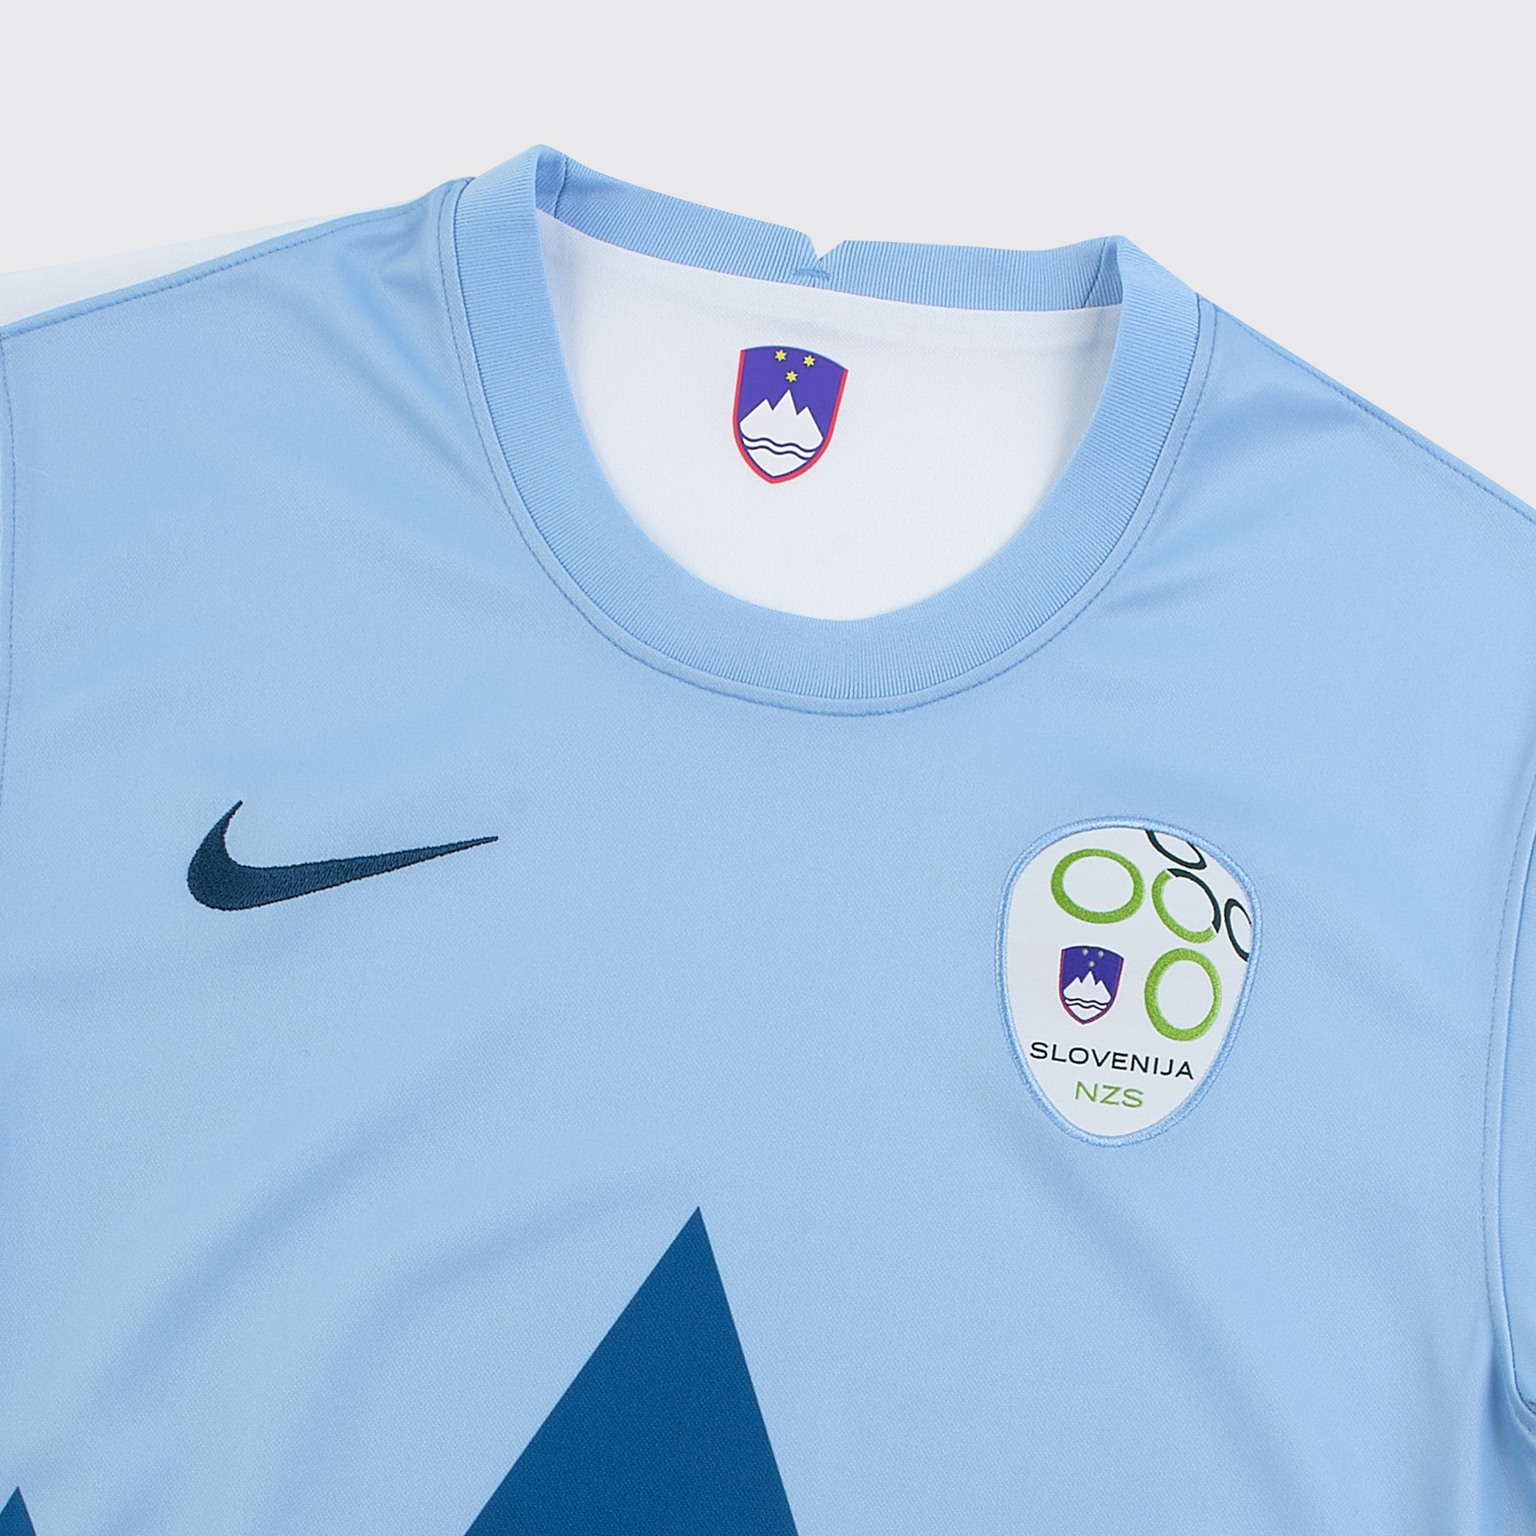 Футболка игровая домашняя Nike сборной Словении сезон 2020/21